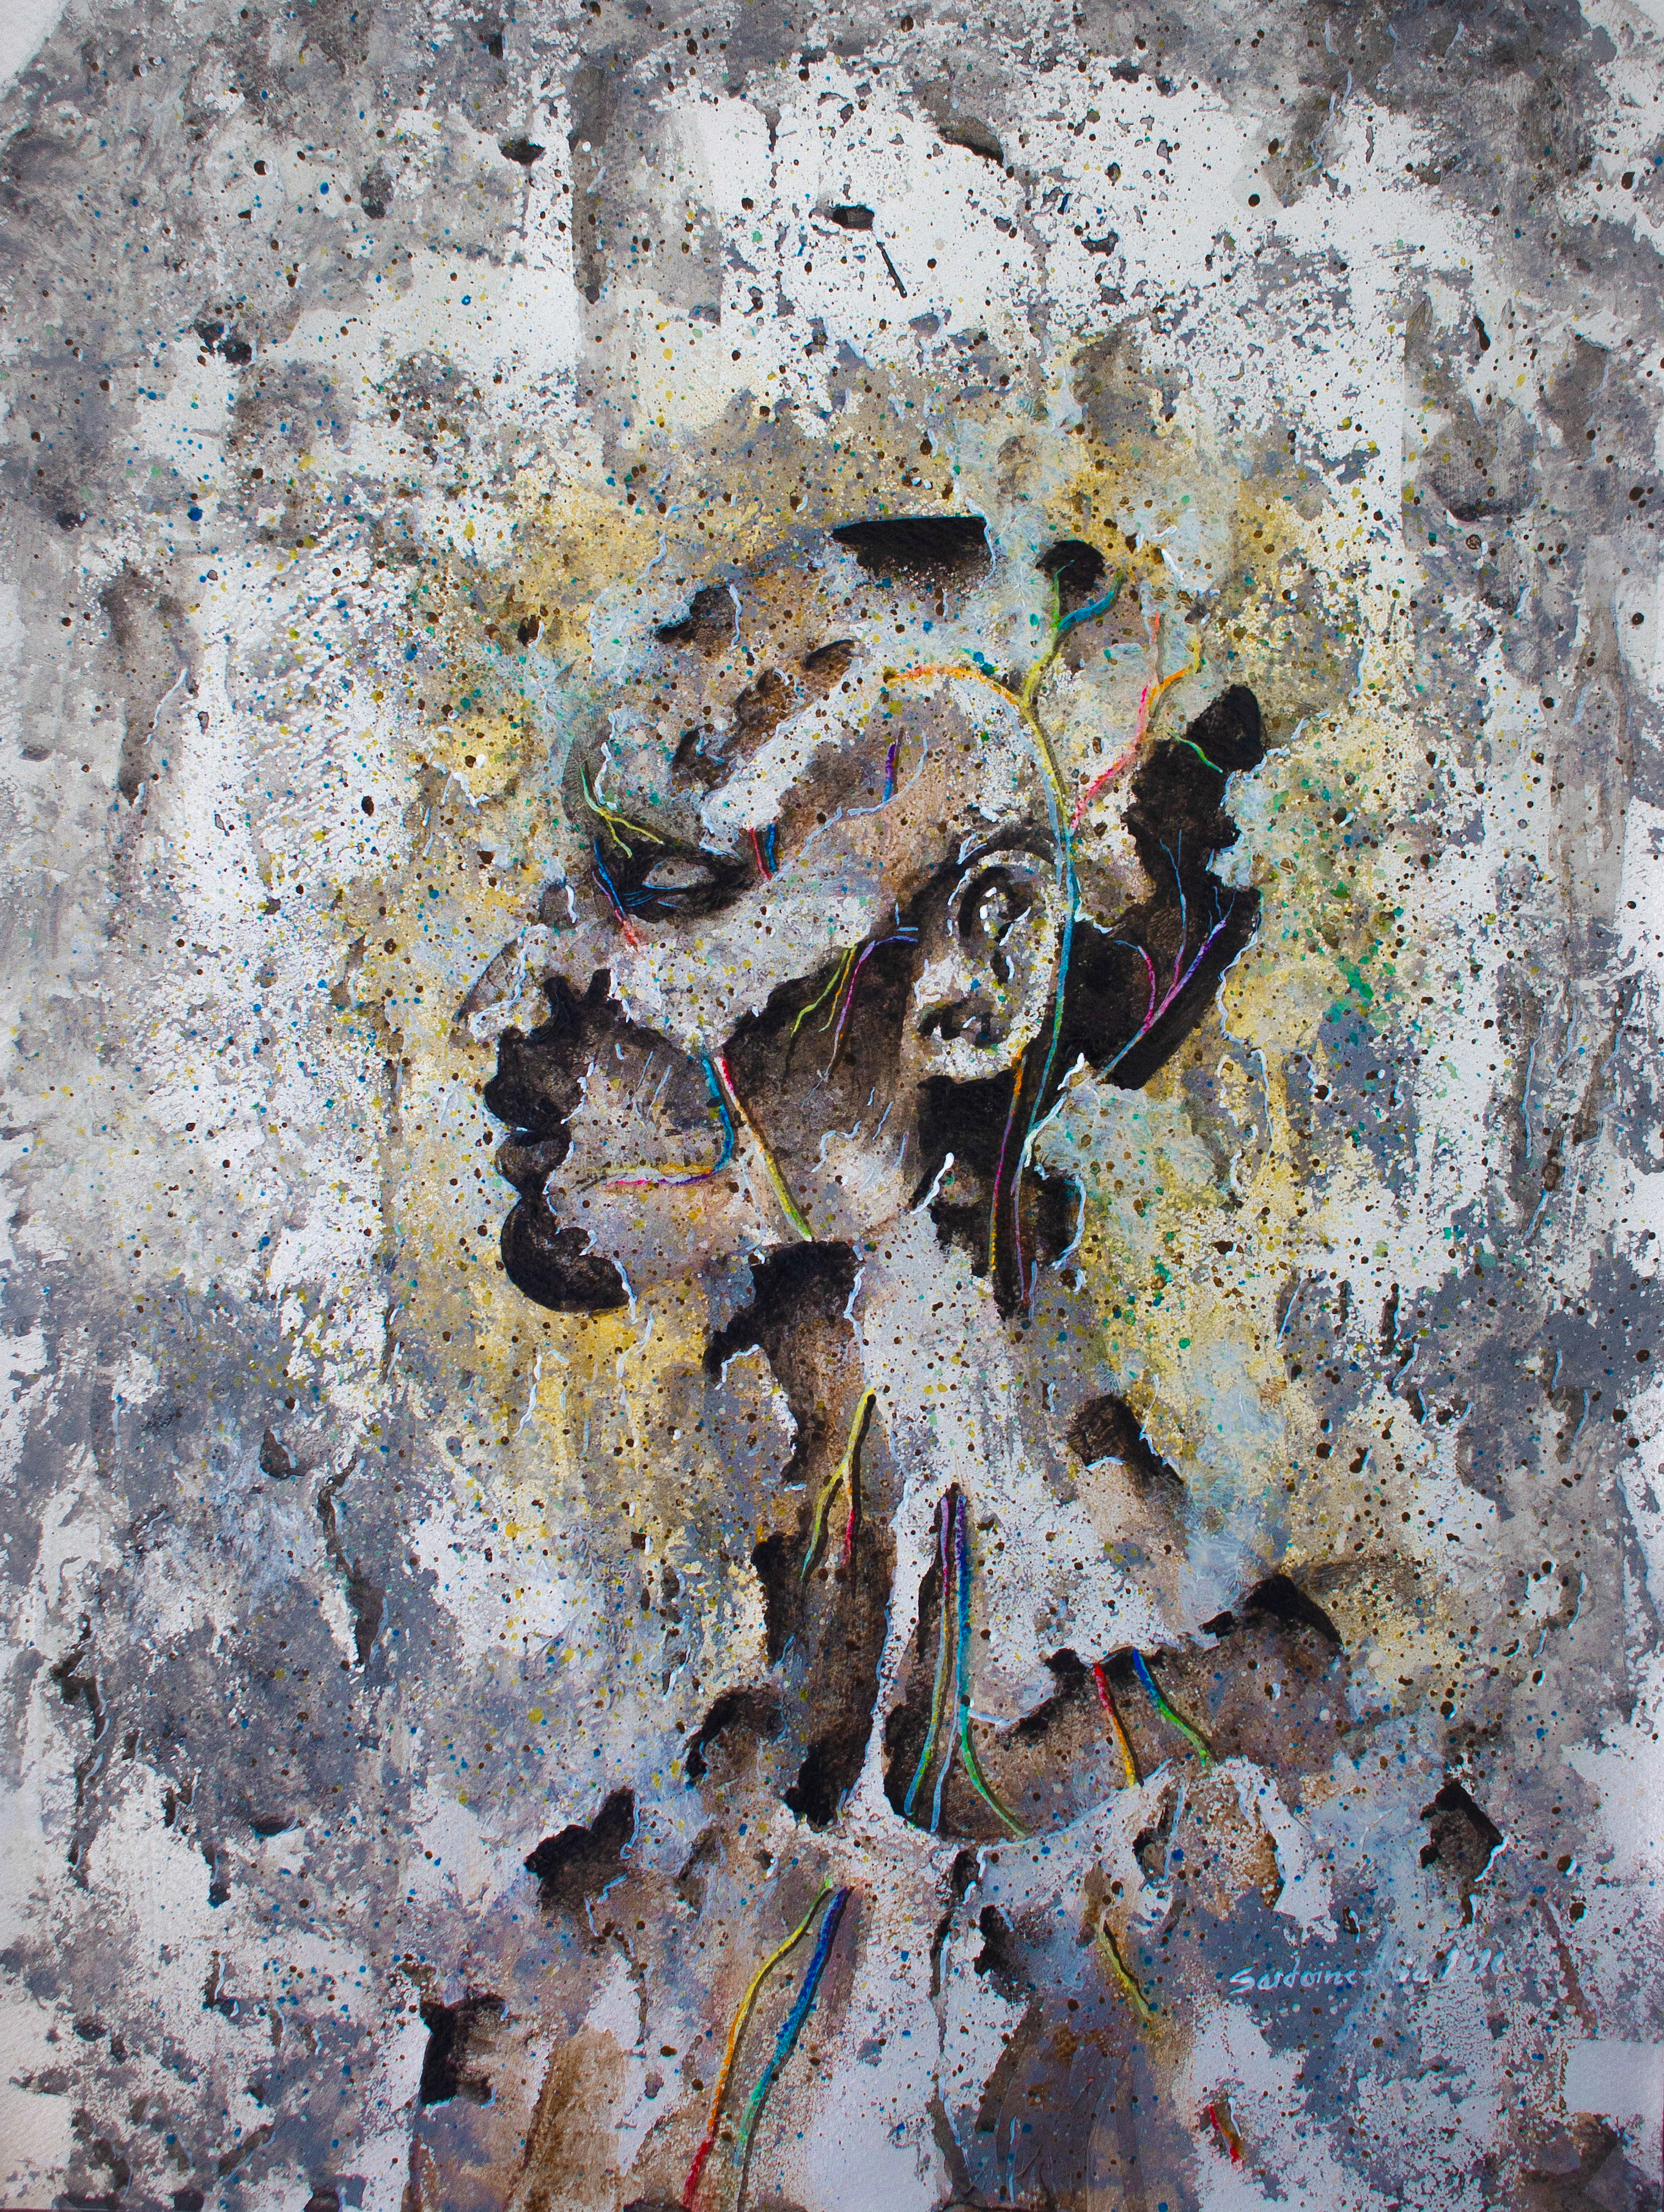 Tableau de l'artiste peintre Sardoine Mia sur un chevalet en pleine nature représentant un homme noir de profil traversé par des veines multicolores sur un fond gris argenté